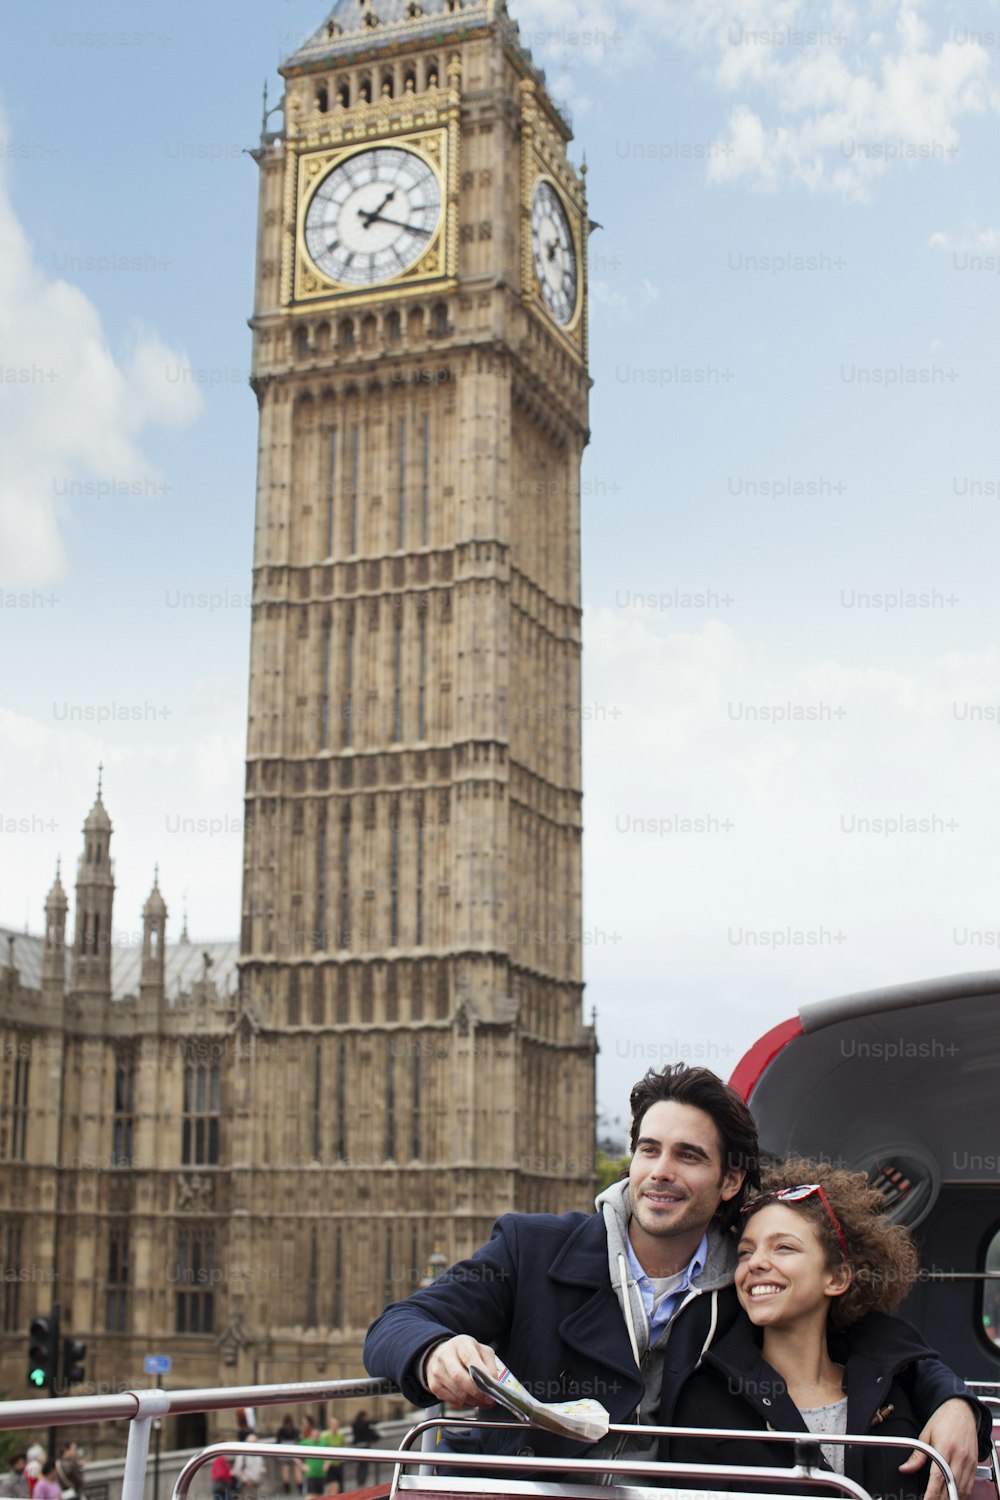 빅벤 시계탑 앞에서 사진을 찍고 있는 남자와 여자